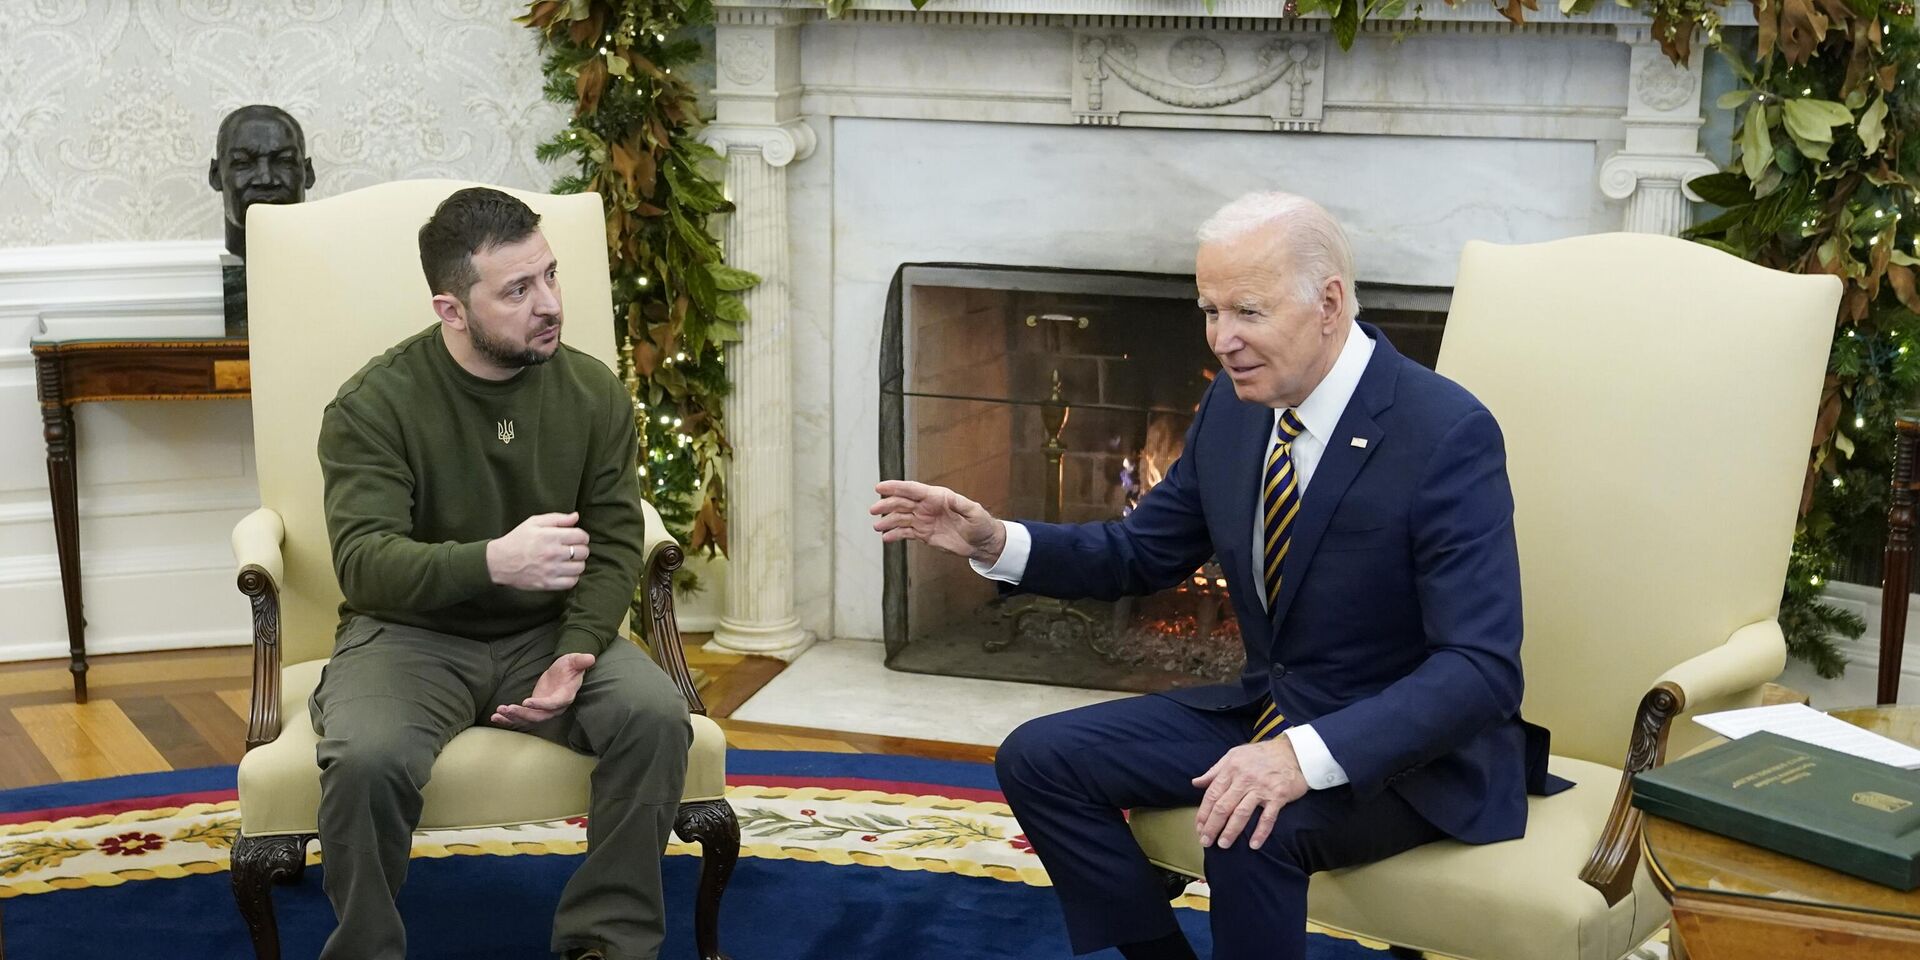 Президент США Джо Байден и президент Украины Владимир Зеленский во время встречи в Белом доме в Вашингтоне. 21 декабря 2022 года - ИноСМИ, 1920, 09.01.2023